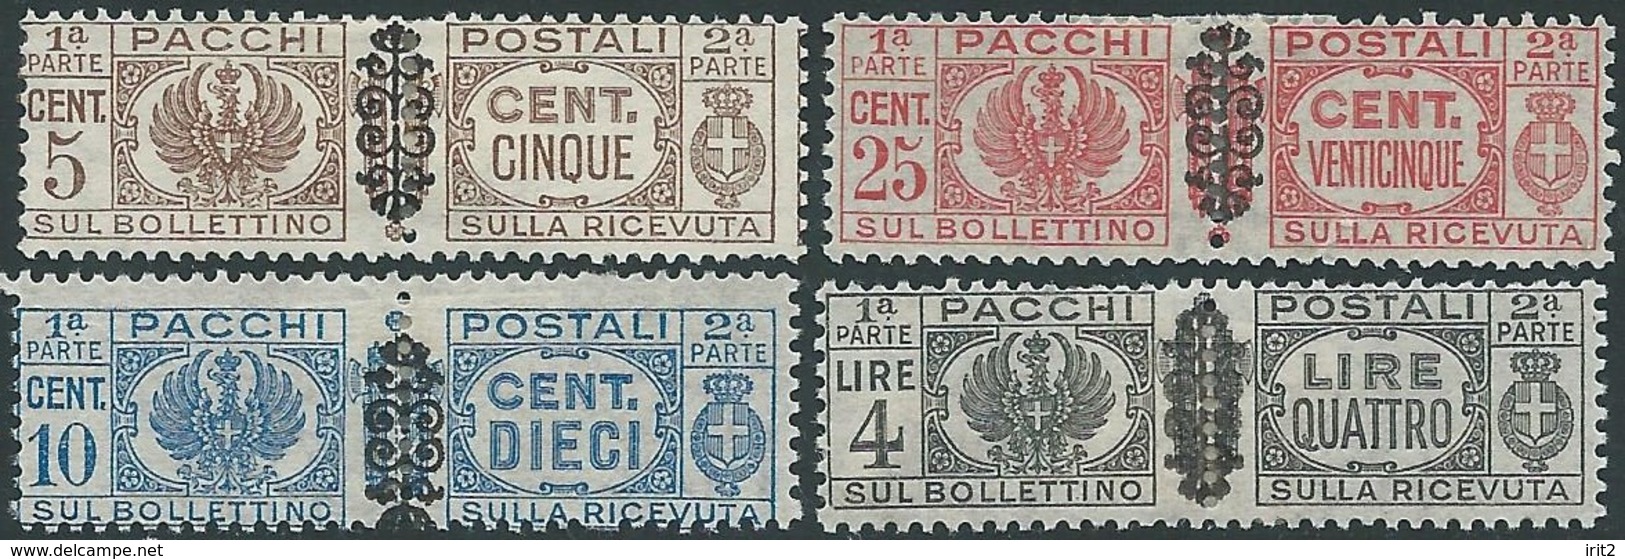 ITALY ITALIA ITALIEN ITALIE  REPUBBLICA 1945 PACCHI POSTALI - Colis-postaux